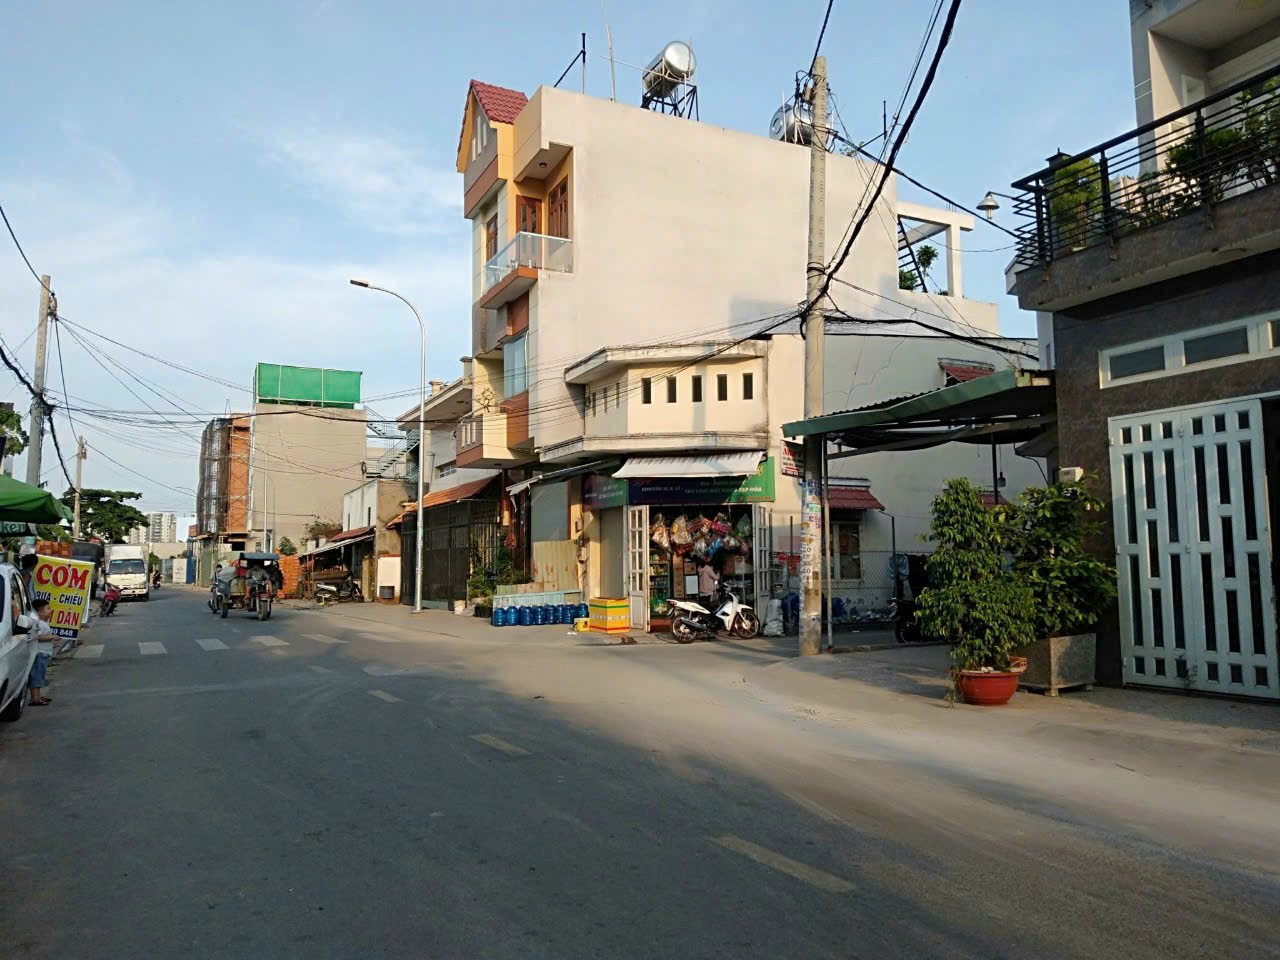 Bán nhà mặt tiền Bình Thành 130m2 ngay chợ Bình Thành buôn bán sầm uất ngày đêm.